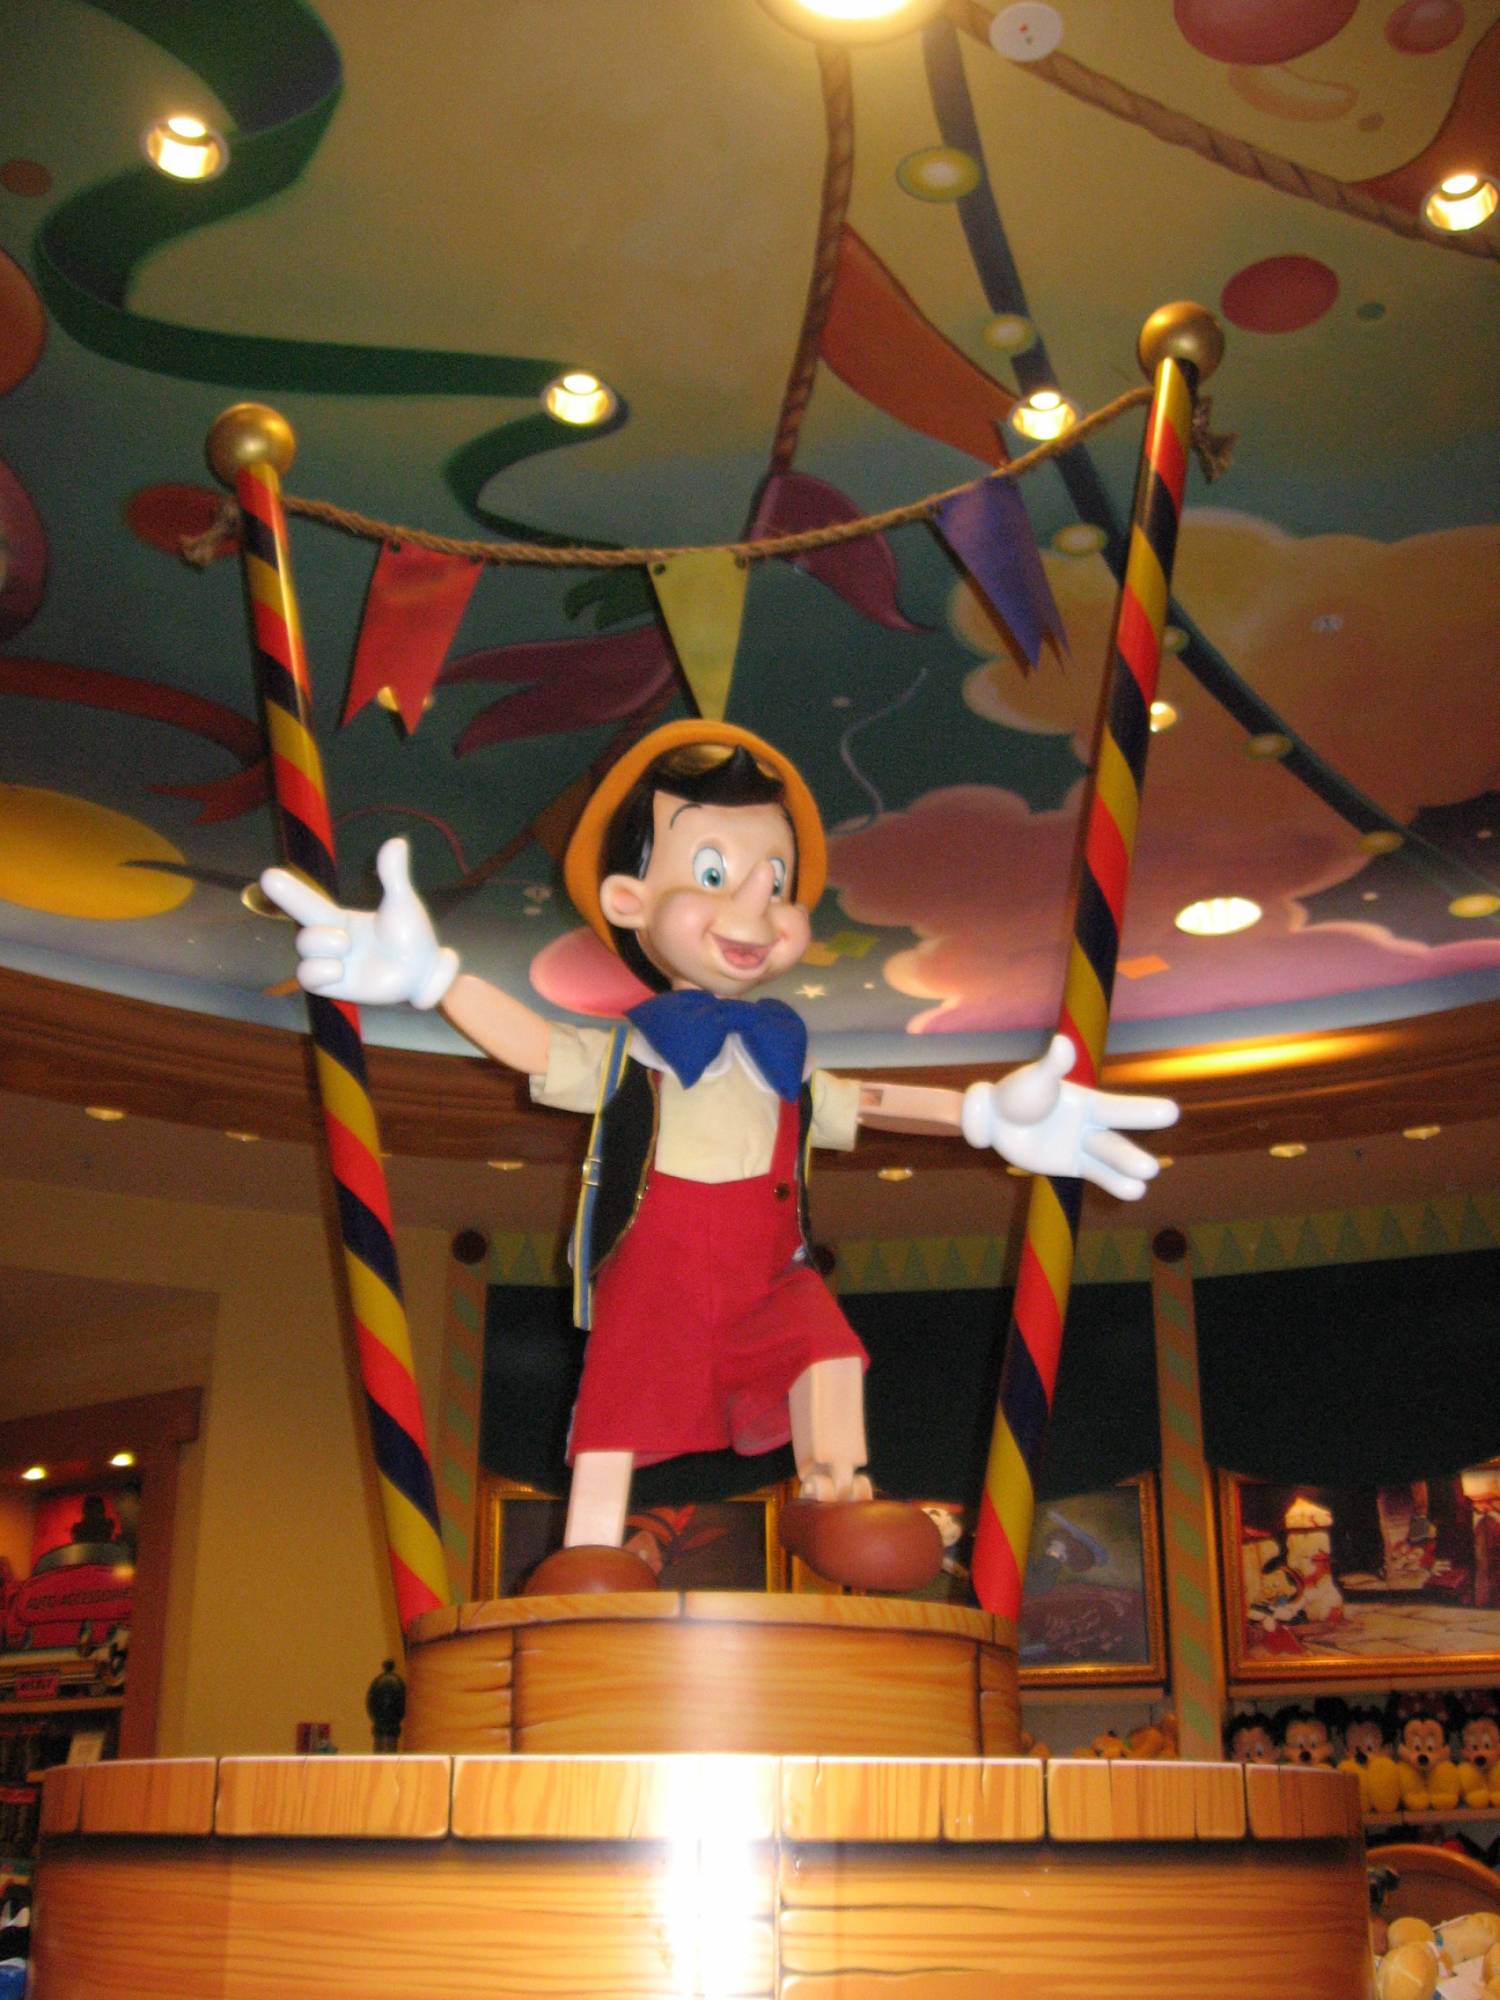 Downtown Disney - World of Disney - Pinocchio